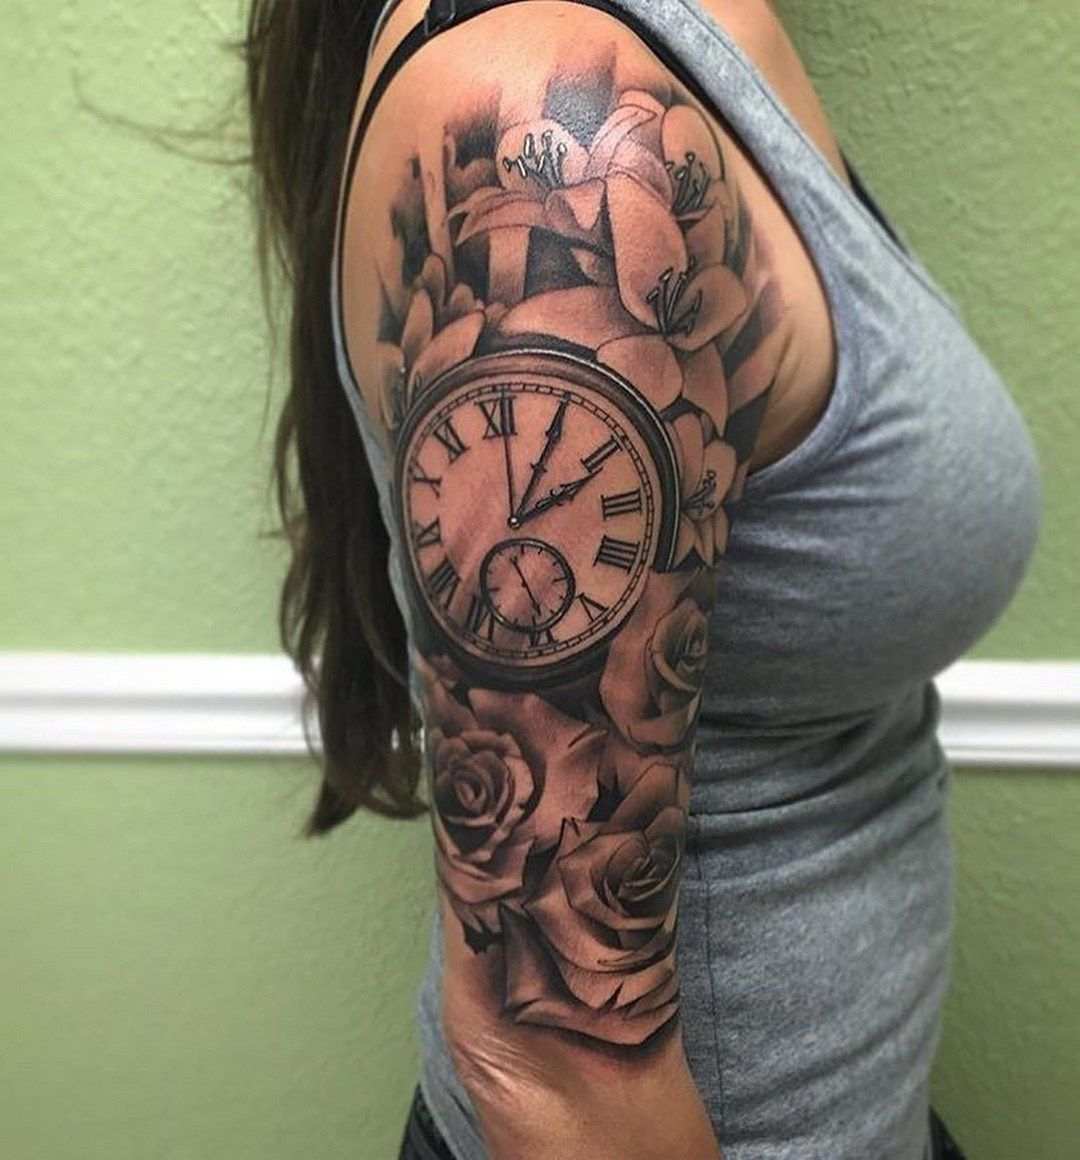 Tatuagens de relógio para mulheres com mais de 50 anos no braço e ombro tendências de tatuagem com flores preto e branco